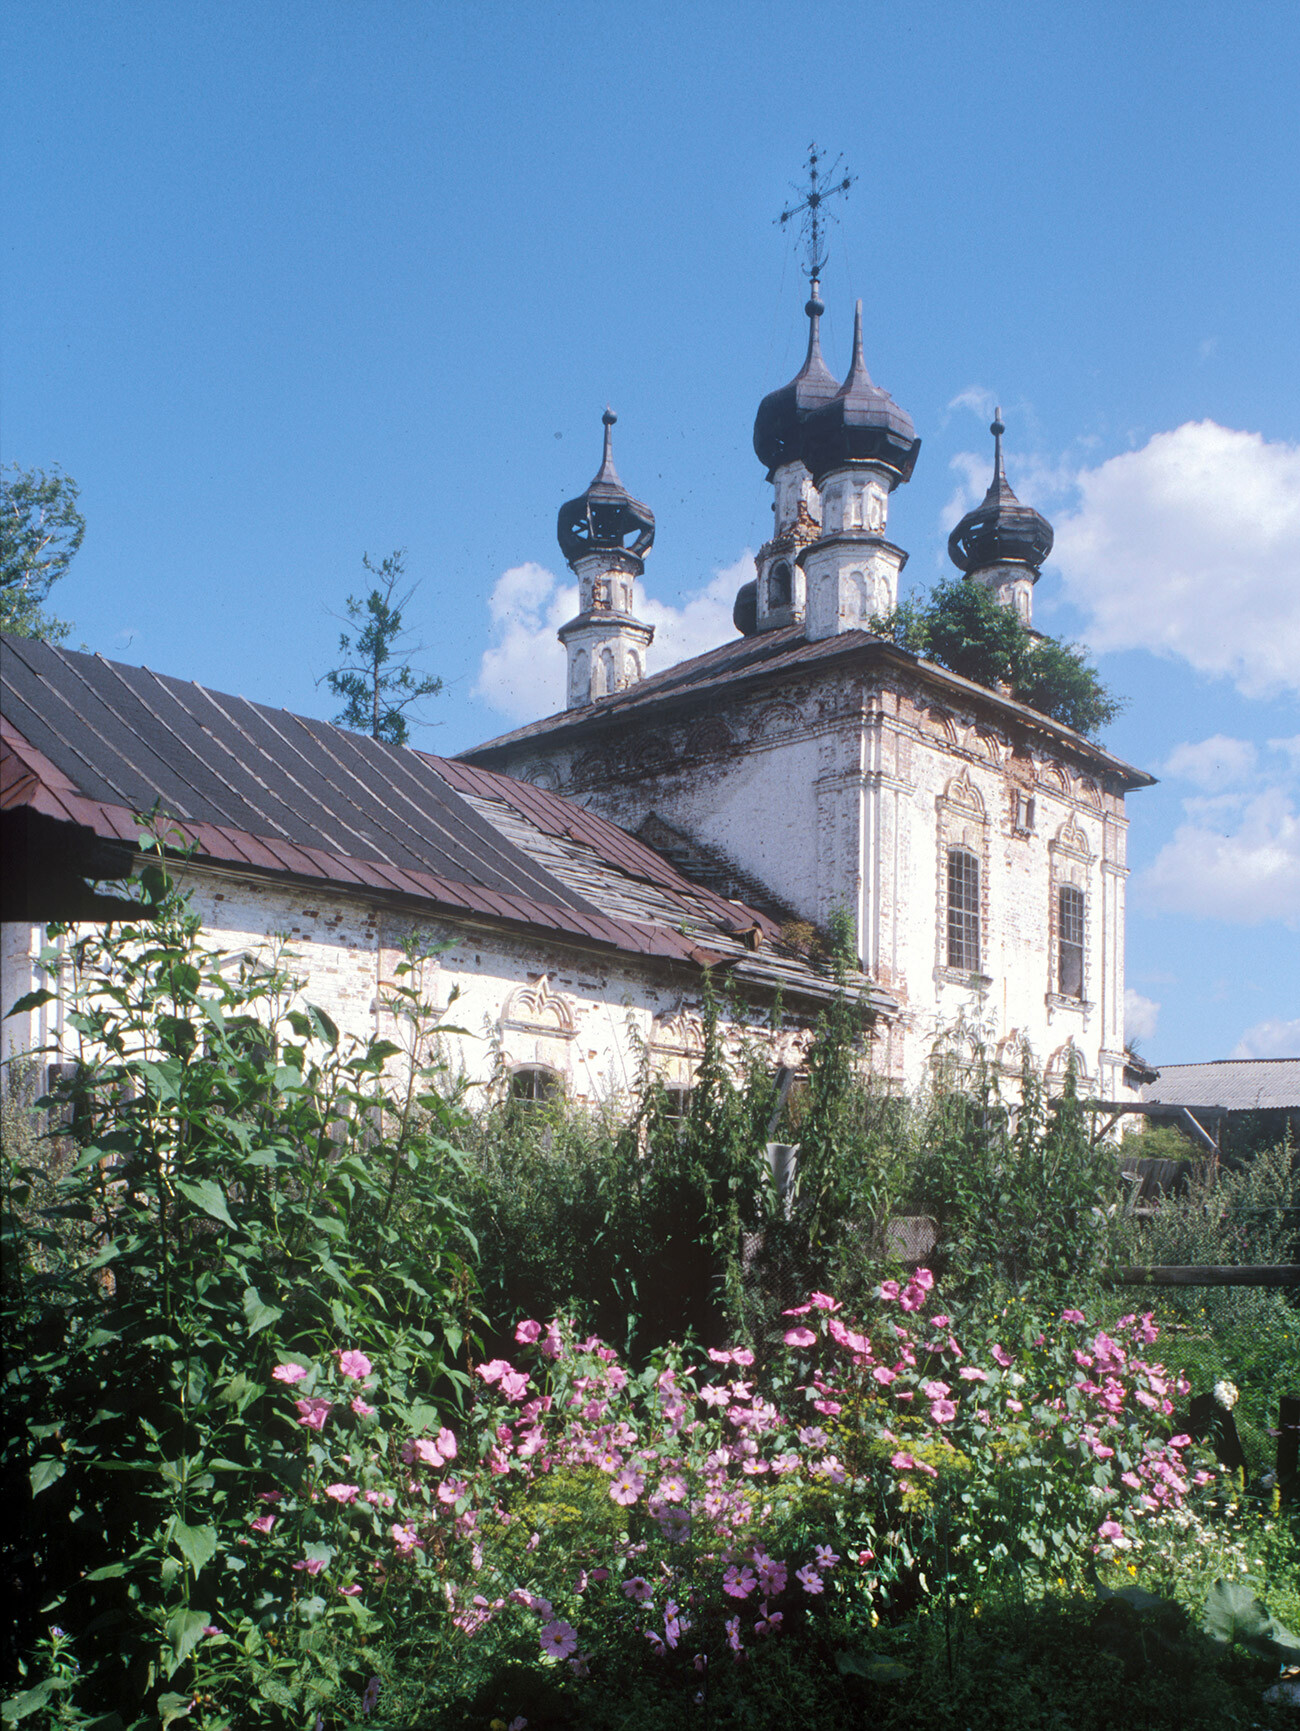 Église de l’Intercession (également connue comme celle de la Nativité du Christ) construite en 1780 sur la rive gauche de la rivière Mologa